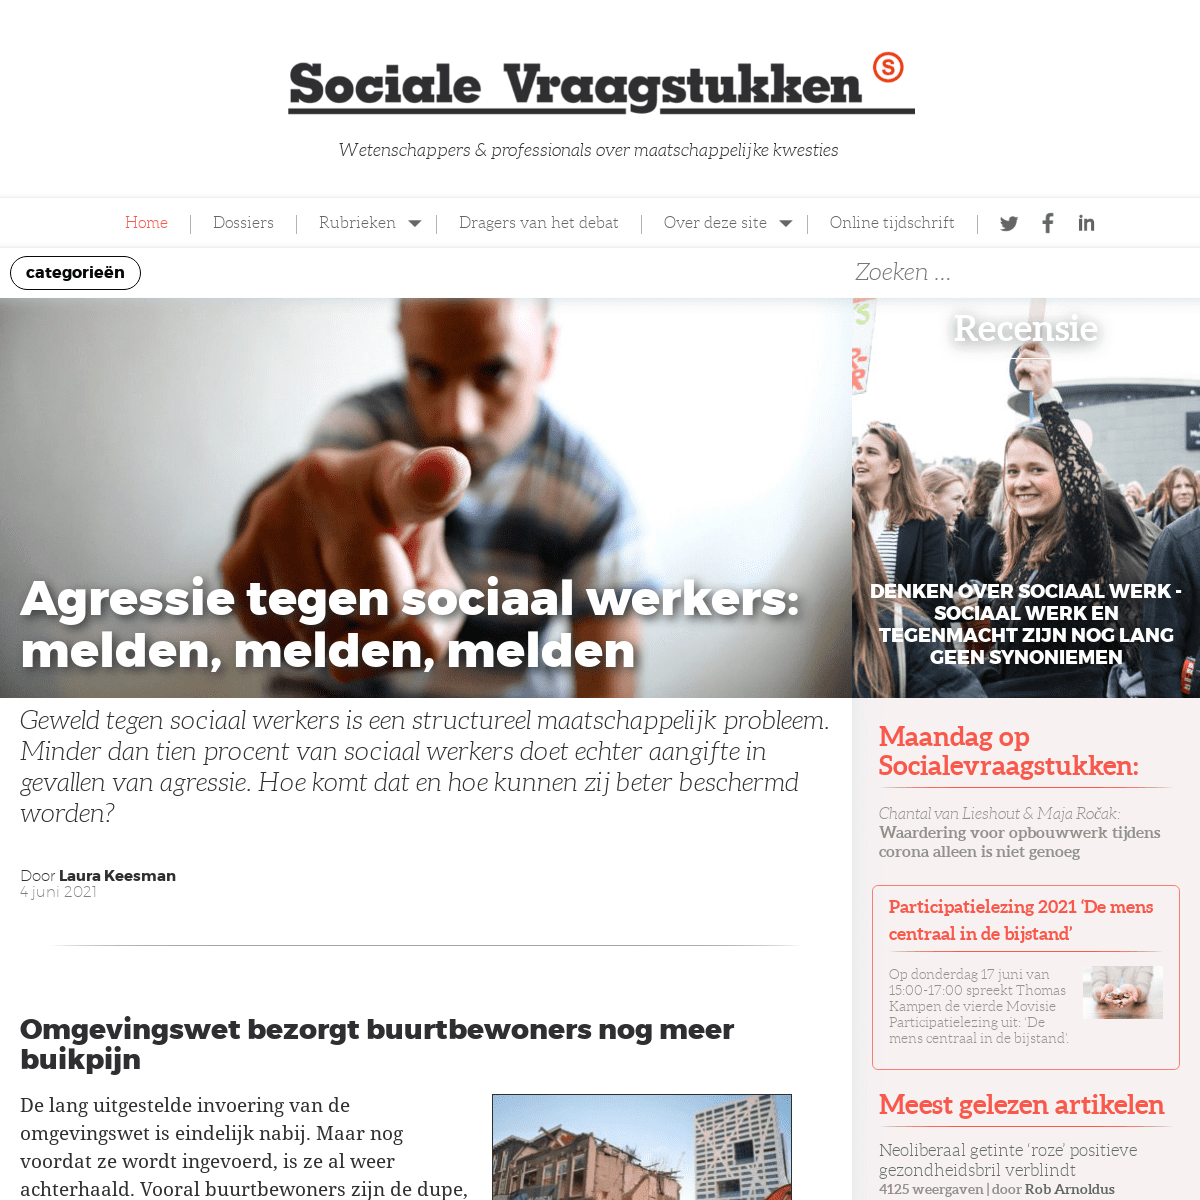 A complete backup of https://socialevraagstukken.nl